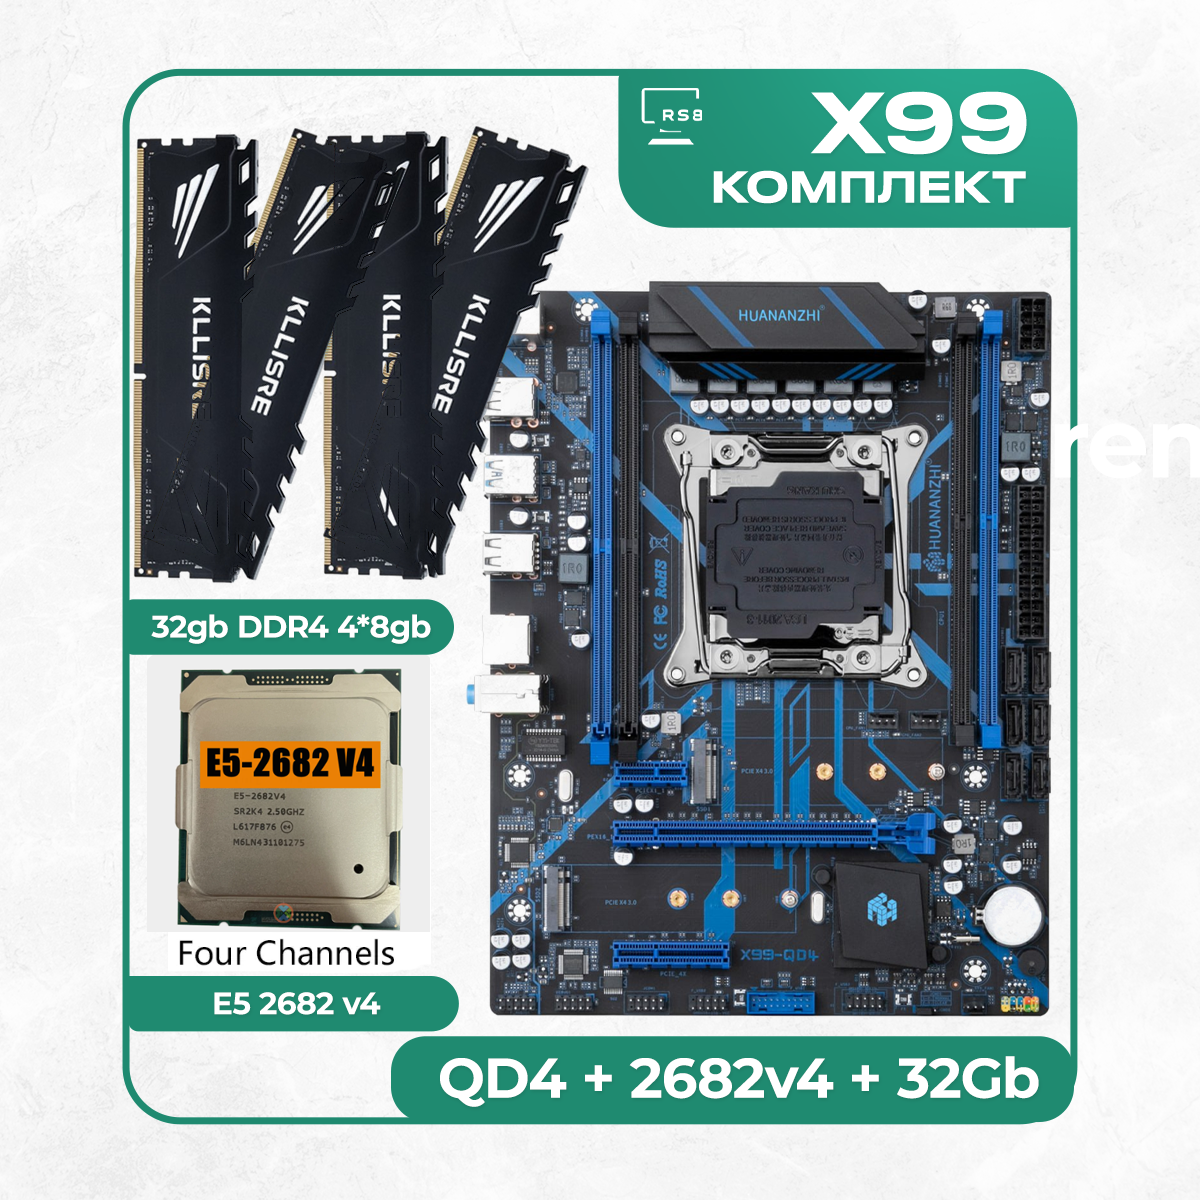 Комплект материнской платы X99: Huananzhi QD4 2011v3 + Xeon E5 2682v4 + DDR4 32Гб 2666Мгц Klissre 4х8Гб